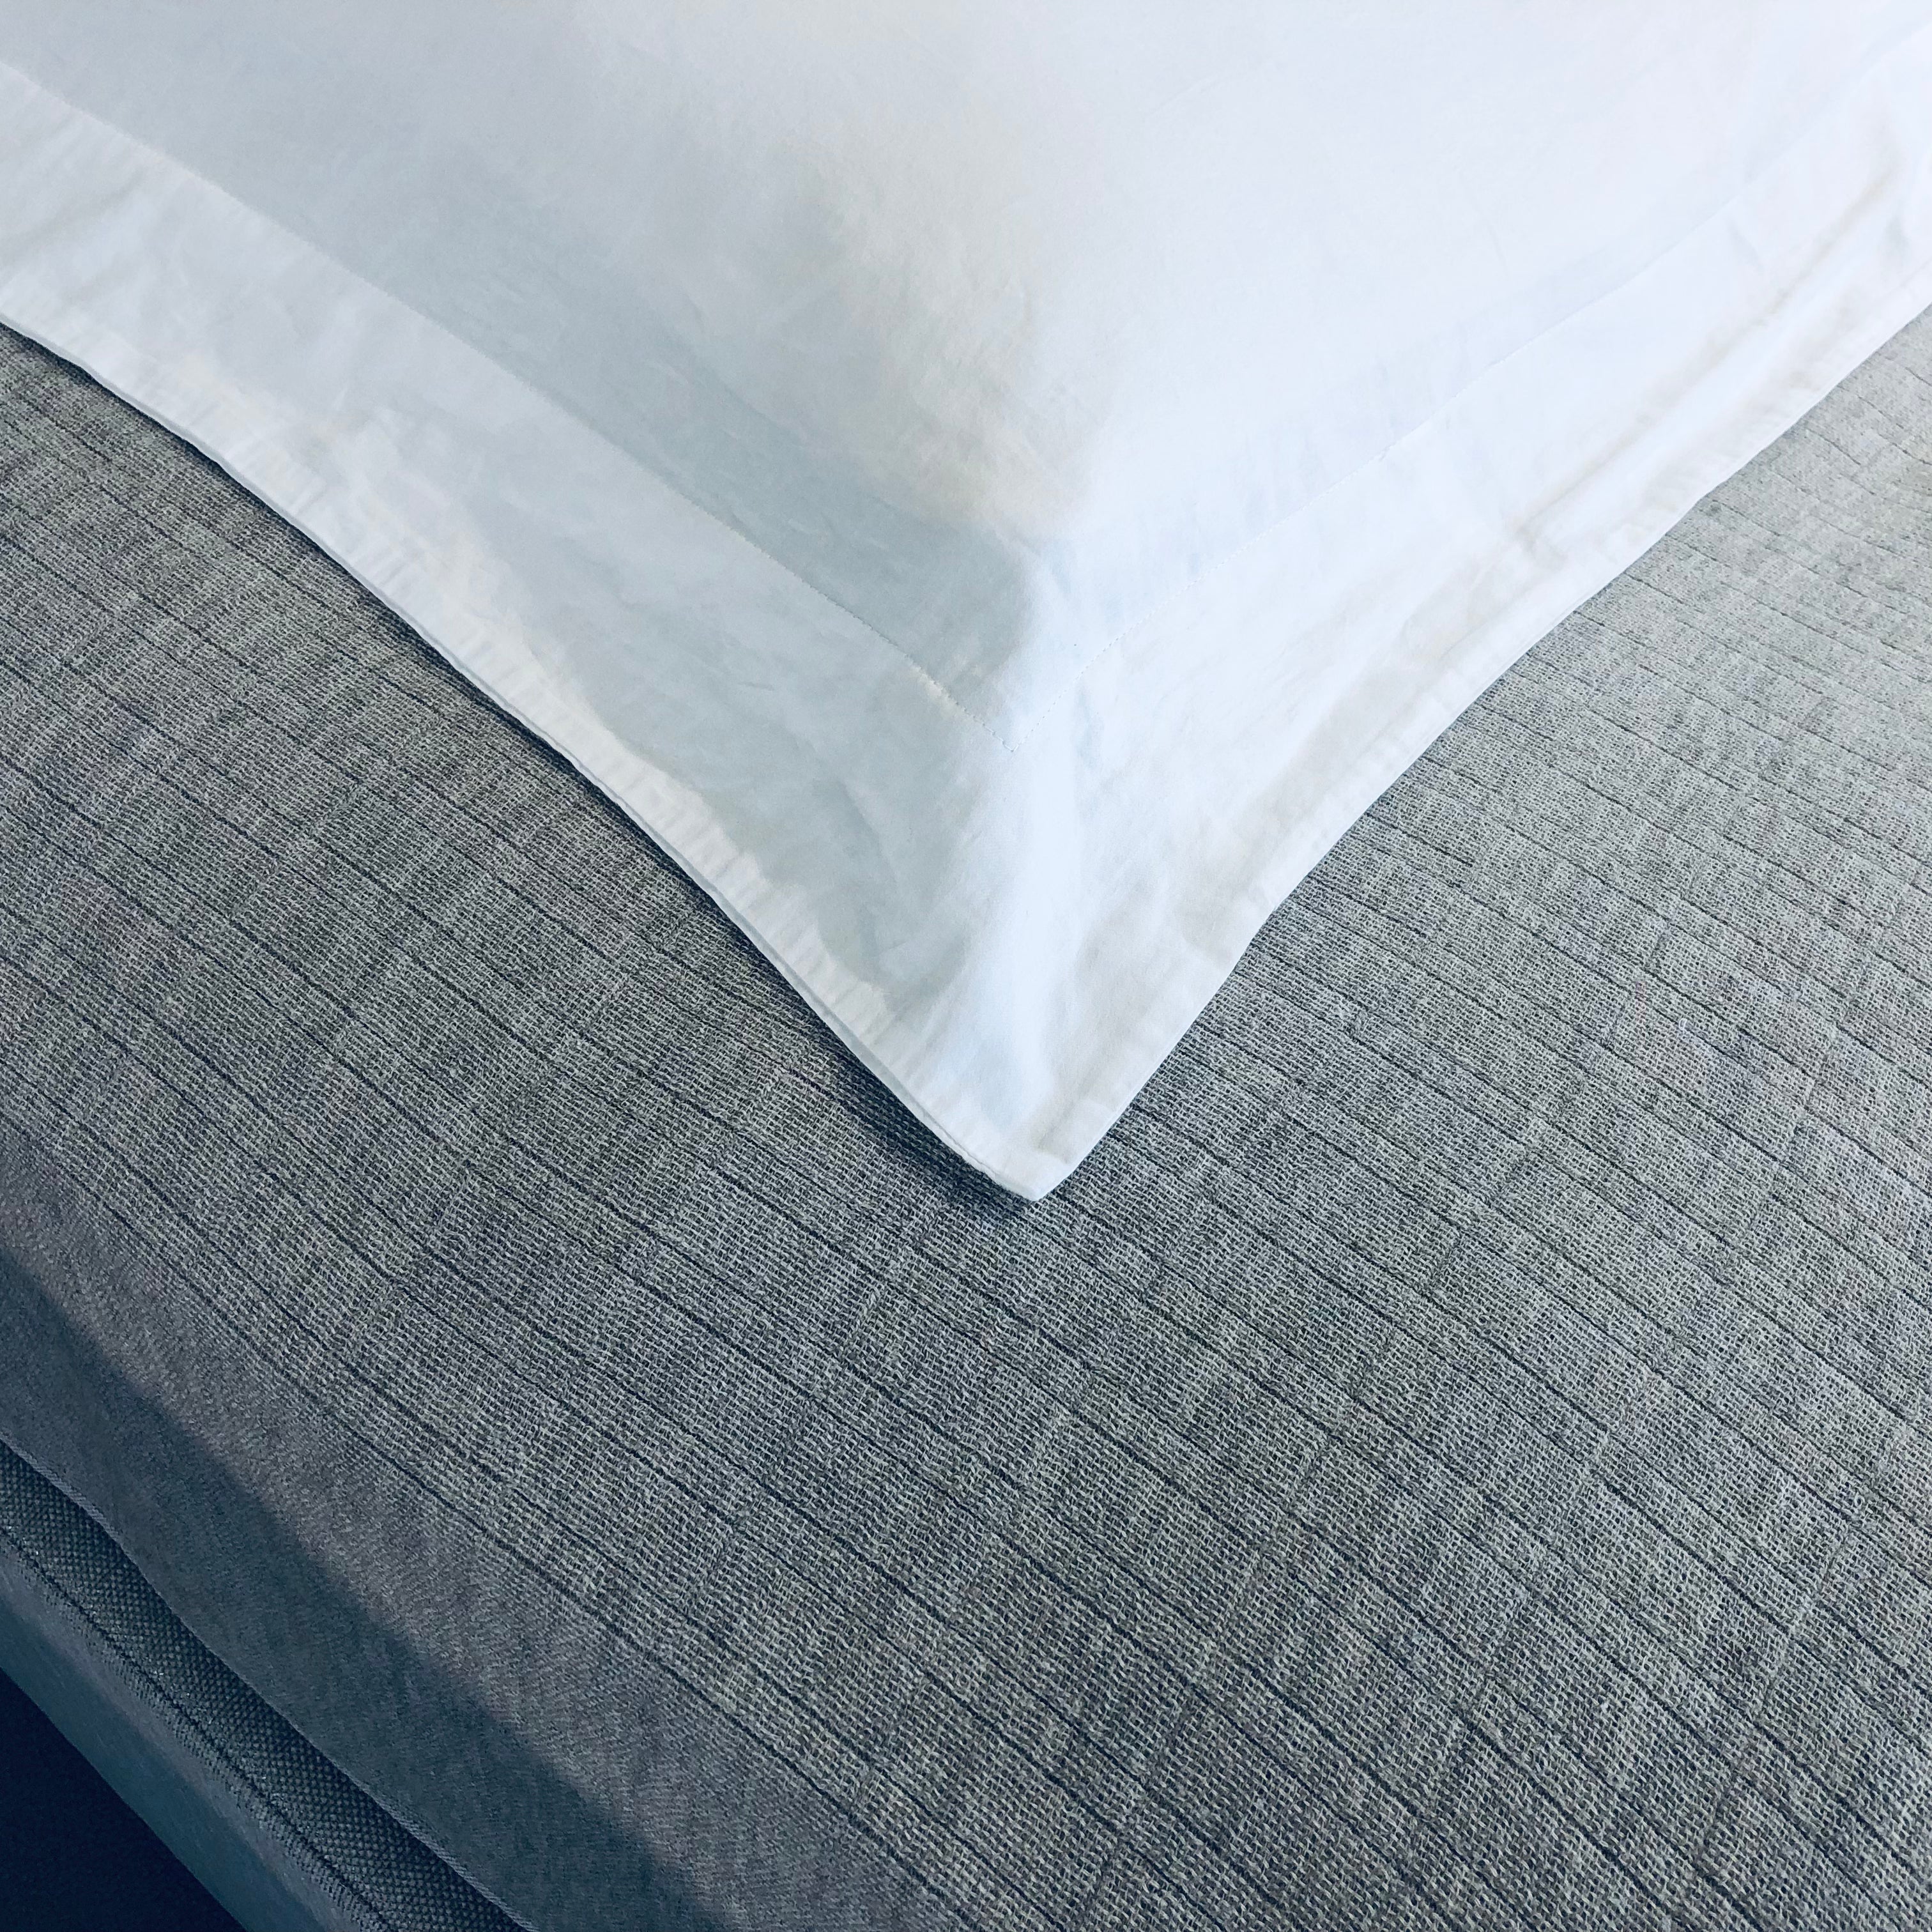 シエルプレーン(ピローケース) – 日本ベッド公式オンラインショップ